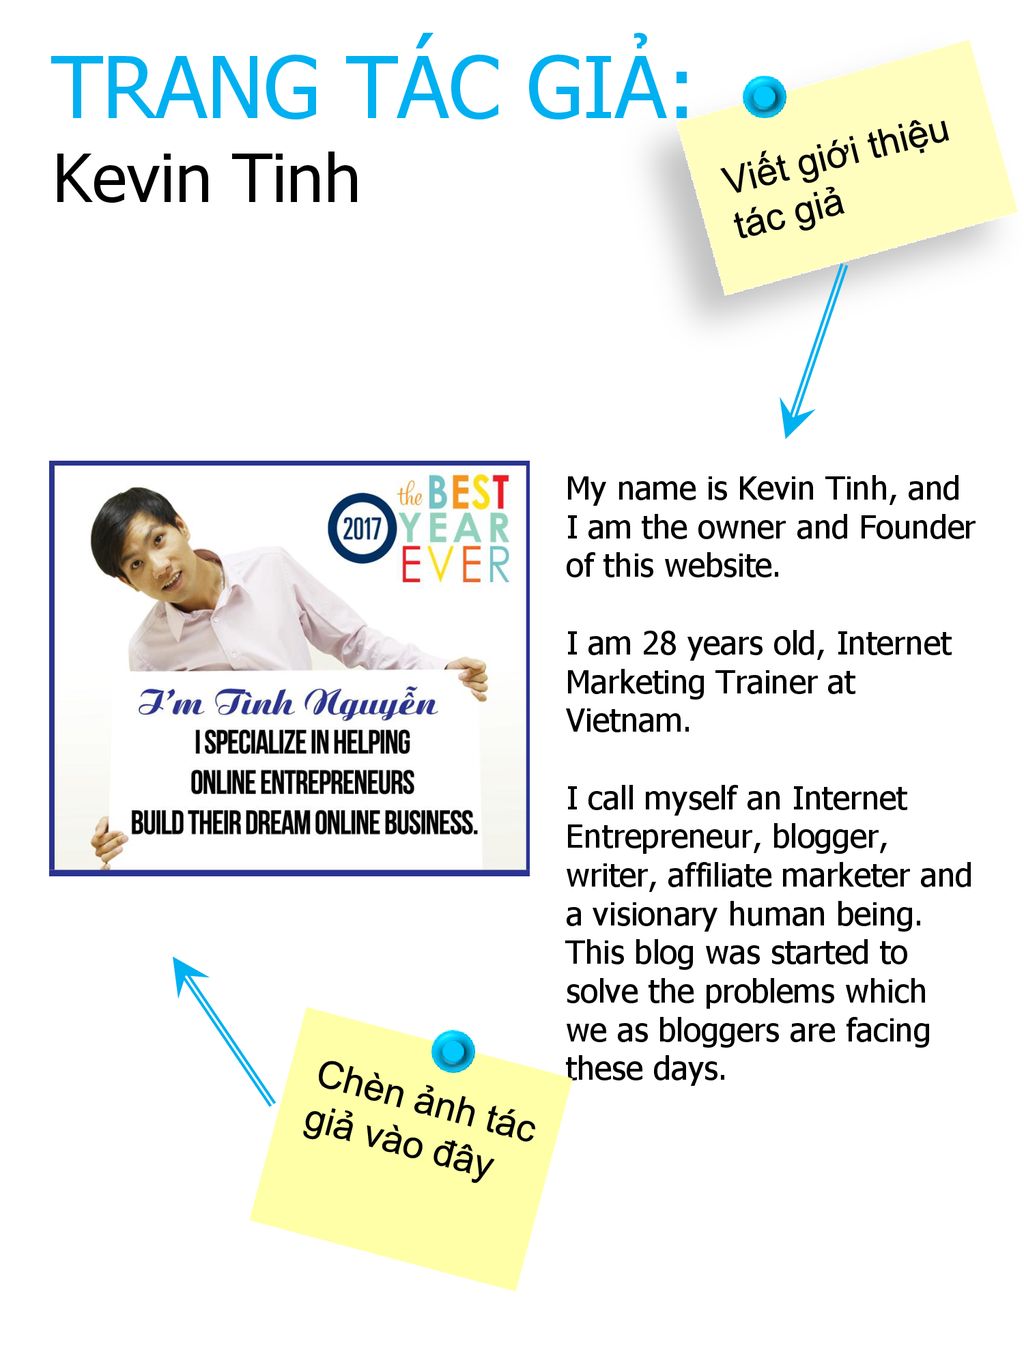 TRANG TÁC GIẢ: Kevin Tinh Viết giới thiệu tác giả